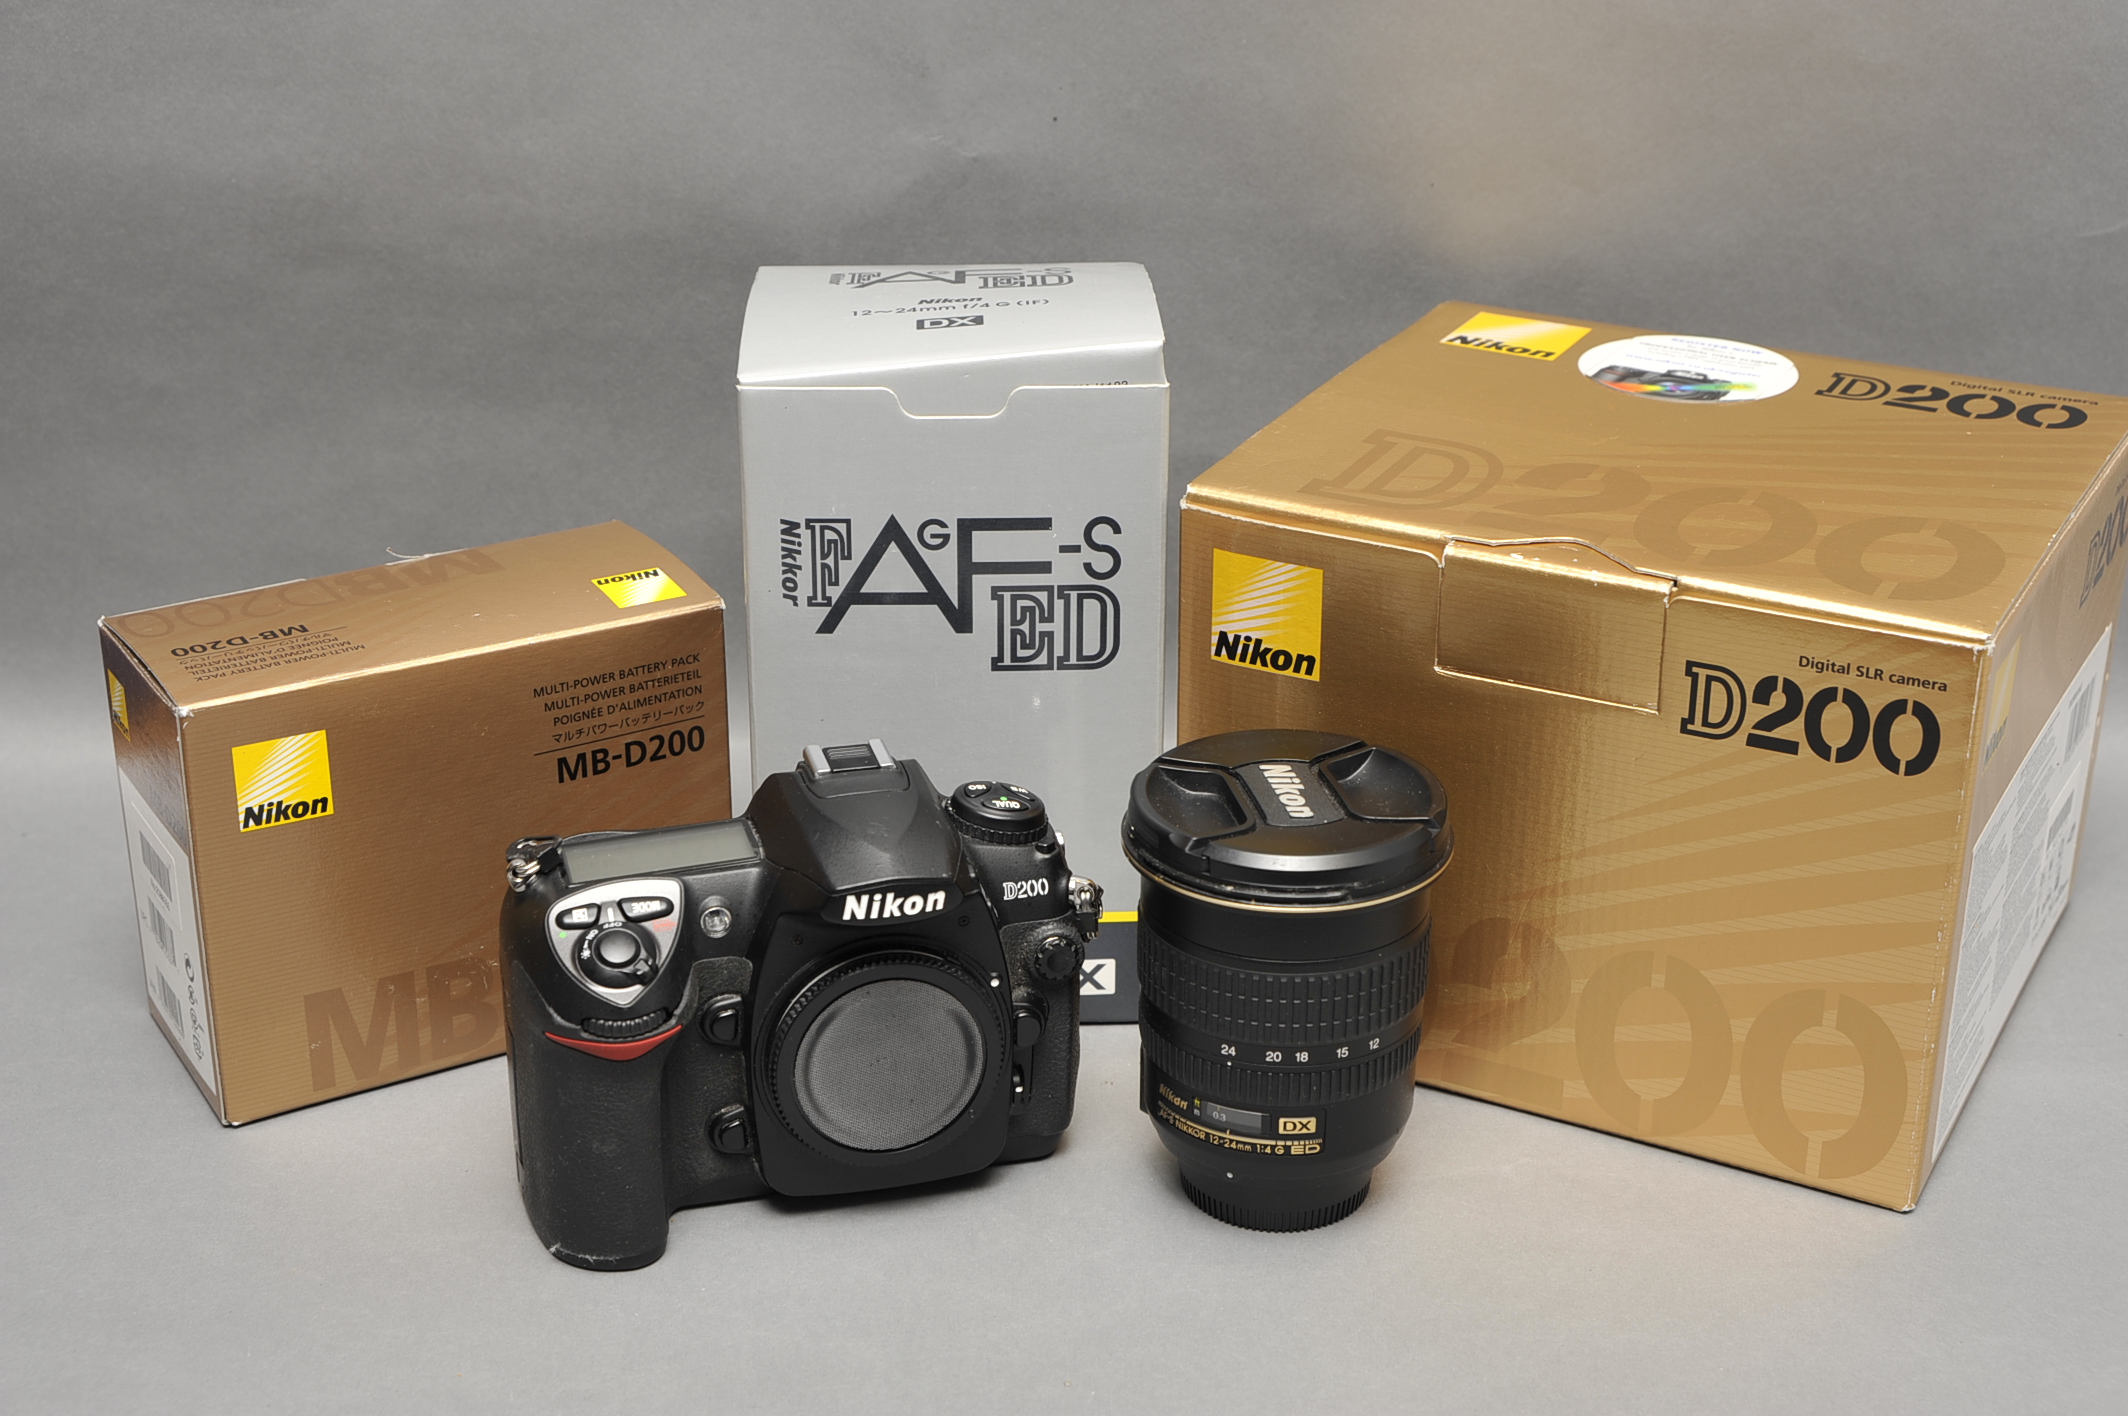 A Nikon D200 Digital SLR Camera, with Nikkor AF-S ED G f/4 12-24mm lens and MB-D200 battery grip,